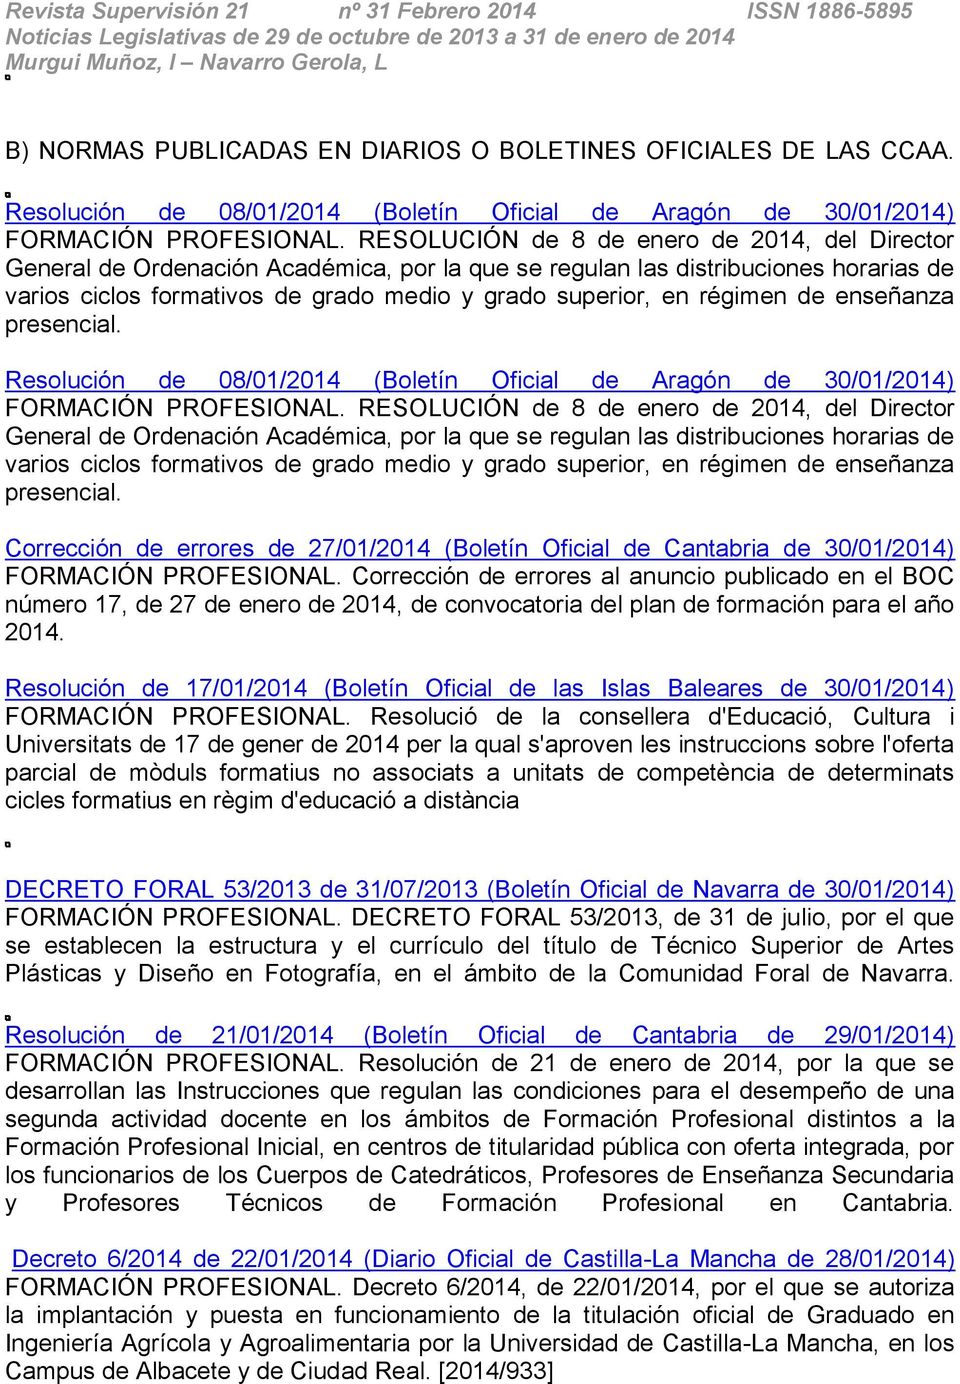 régimen de enseñanza presencial. Resolución de 08/01/2014 (Boletín Oficial de Aragón de 30/01/2014) FORMACIÓN PROFESIONAL.  régimen de enseñanza presencial.